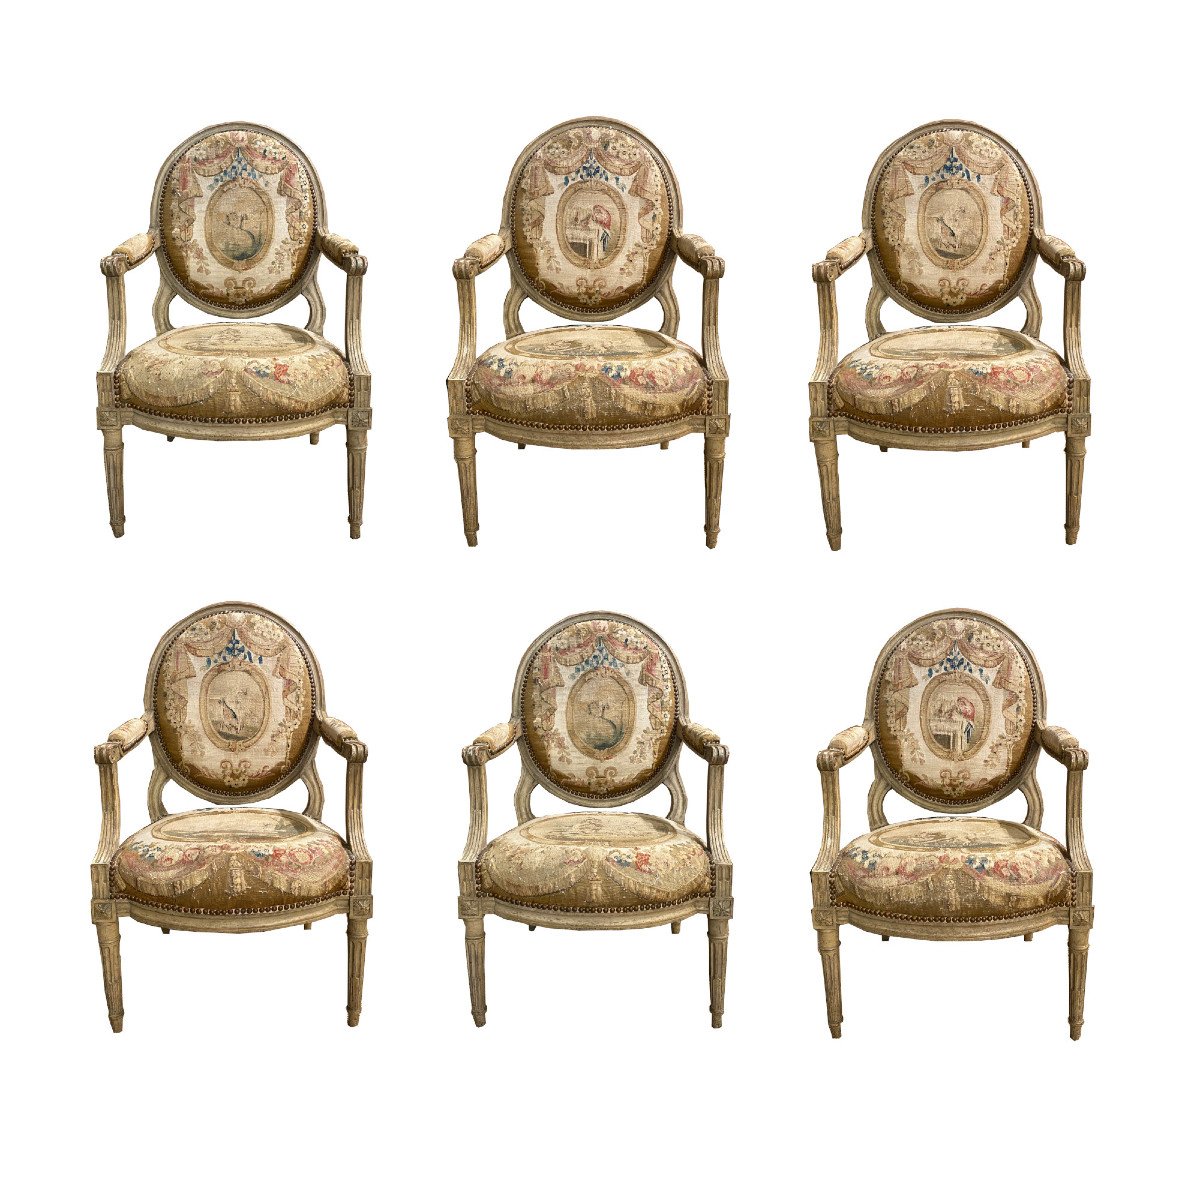 Élégante suite de six larges fauteuils à dossiers plats recouvert de tapisseries